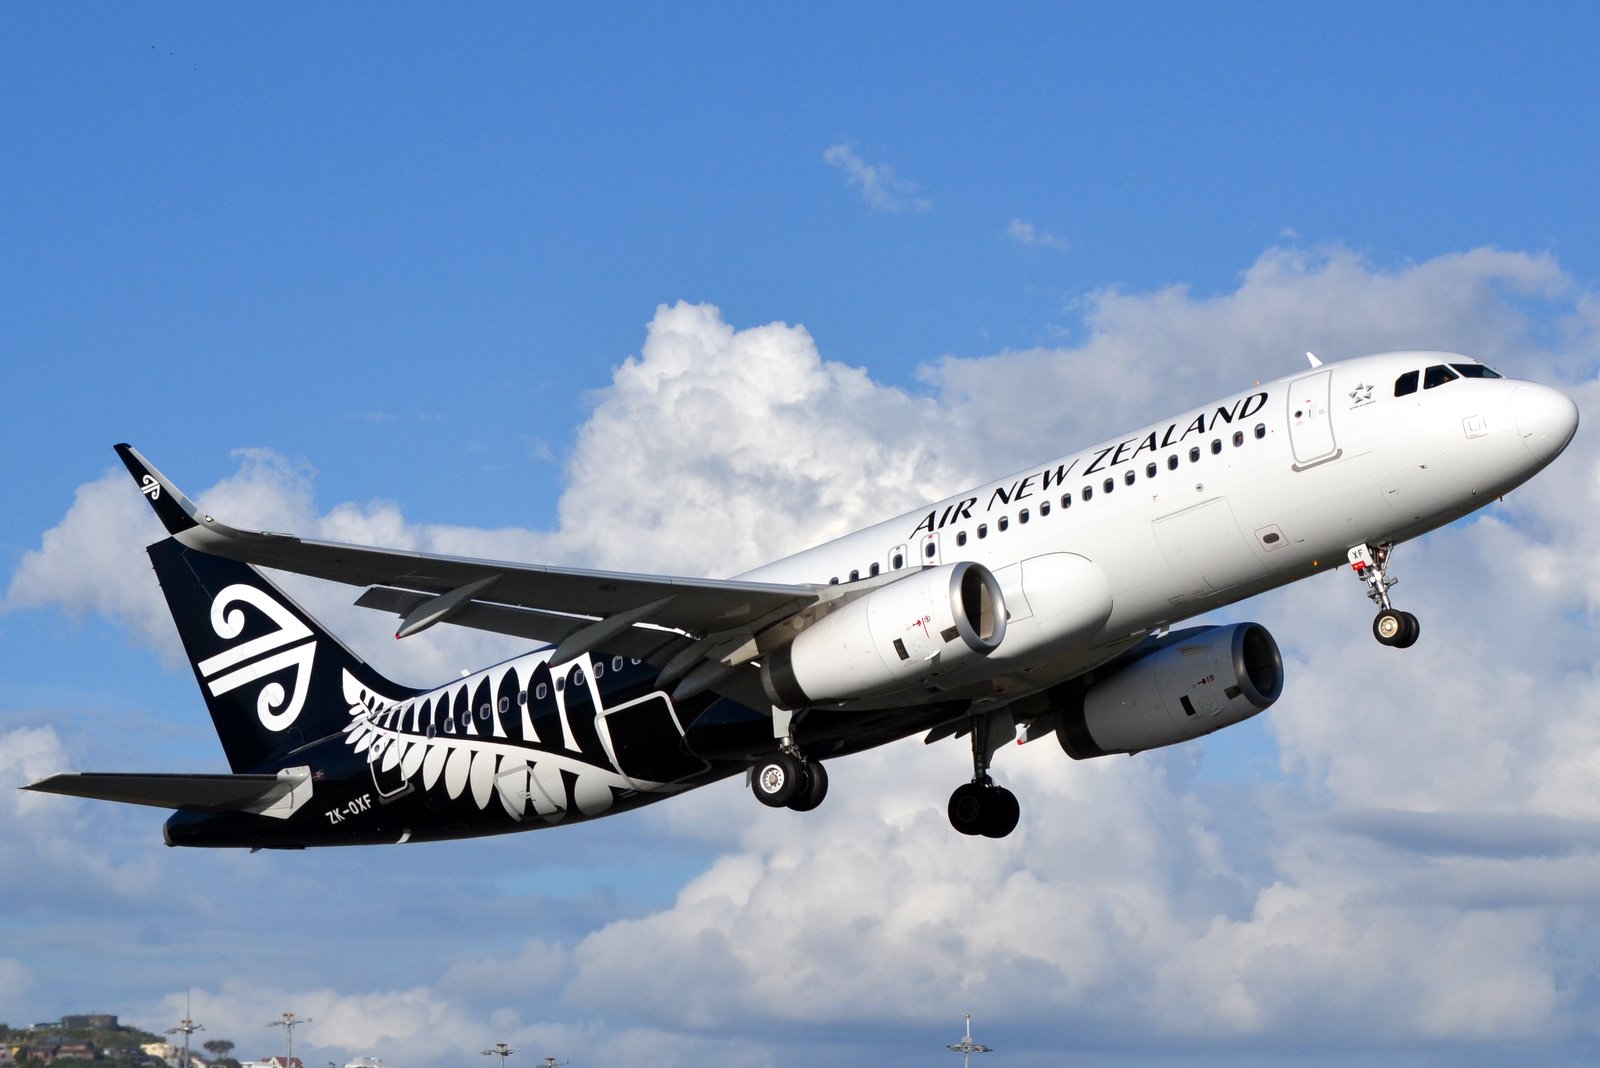 Air new zealand. Air New Zealand самолеты. Air New Zealand парк самолетов. Air New Zealand посадка. Air New Zealand a320 details.